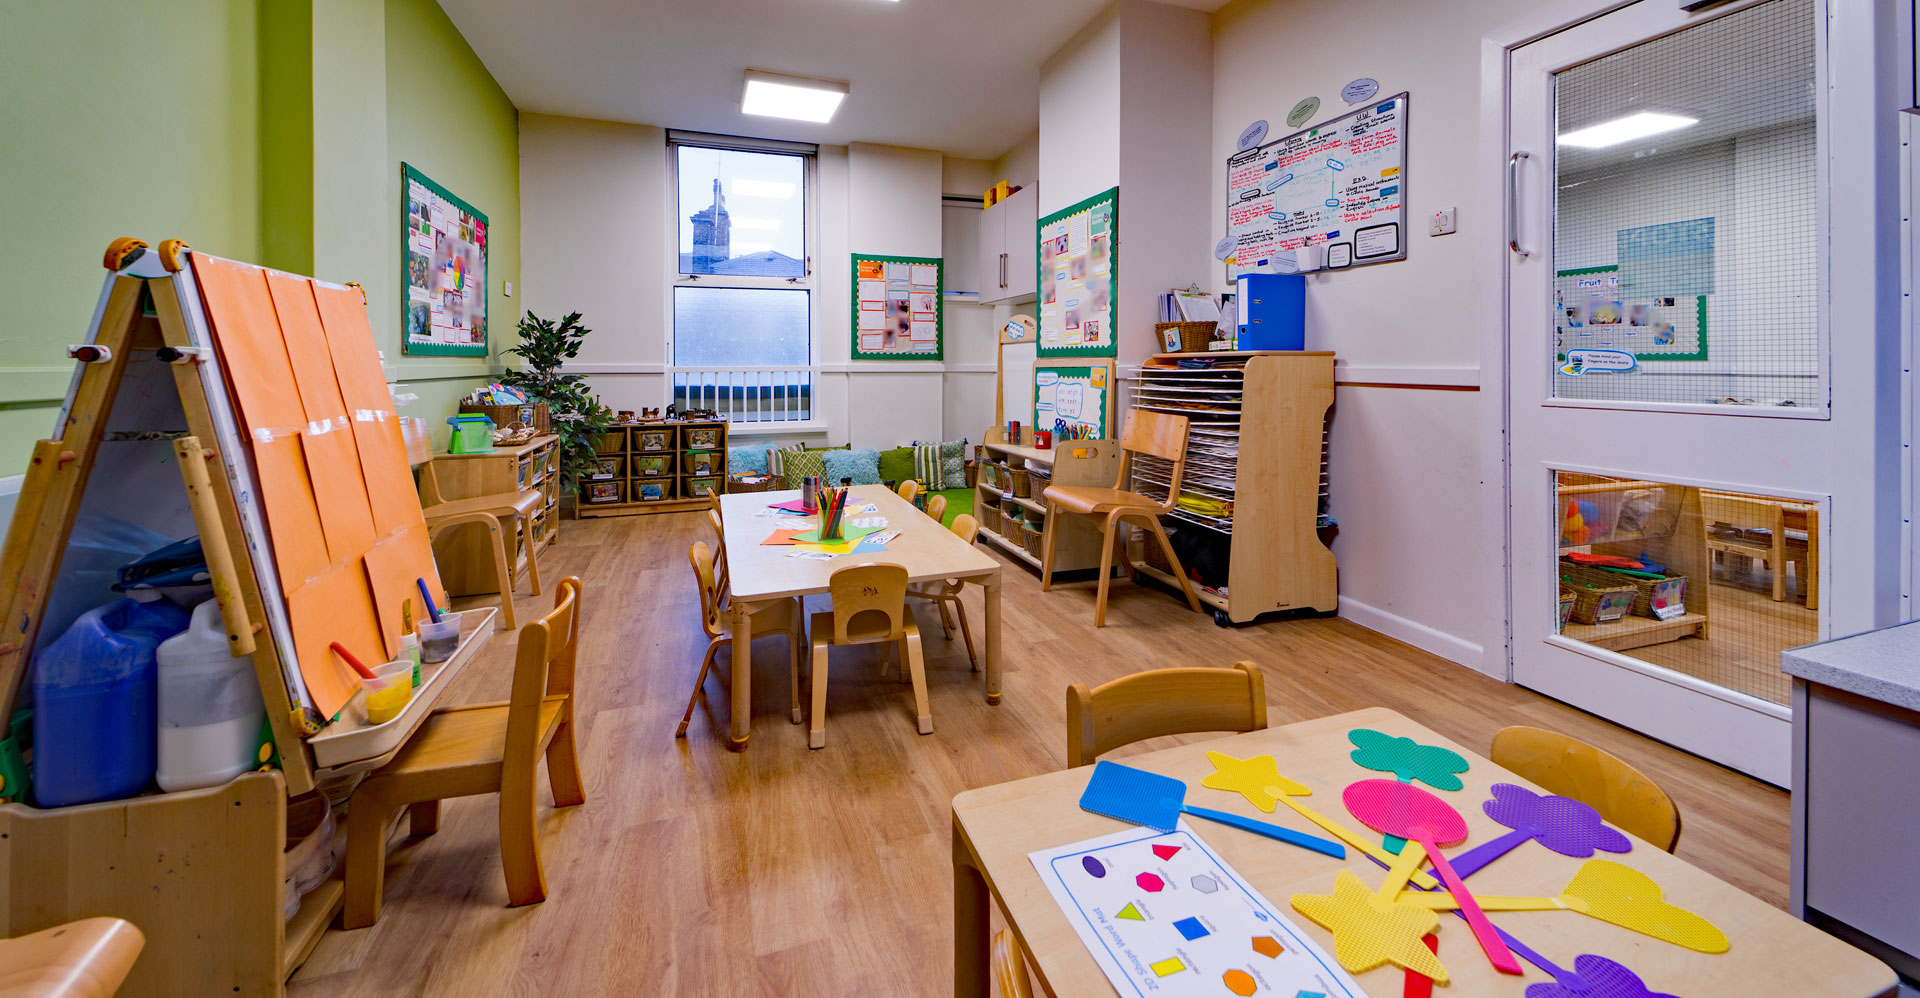 East Greenwich Day Nursery and Preschool